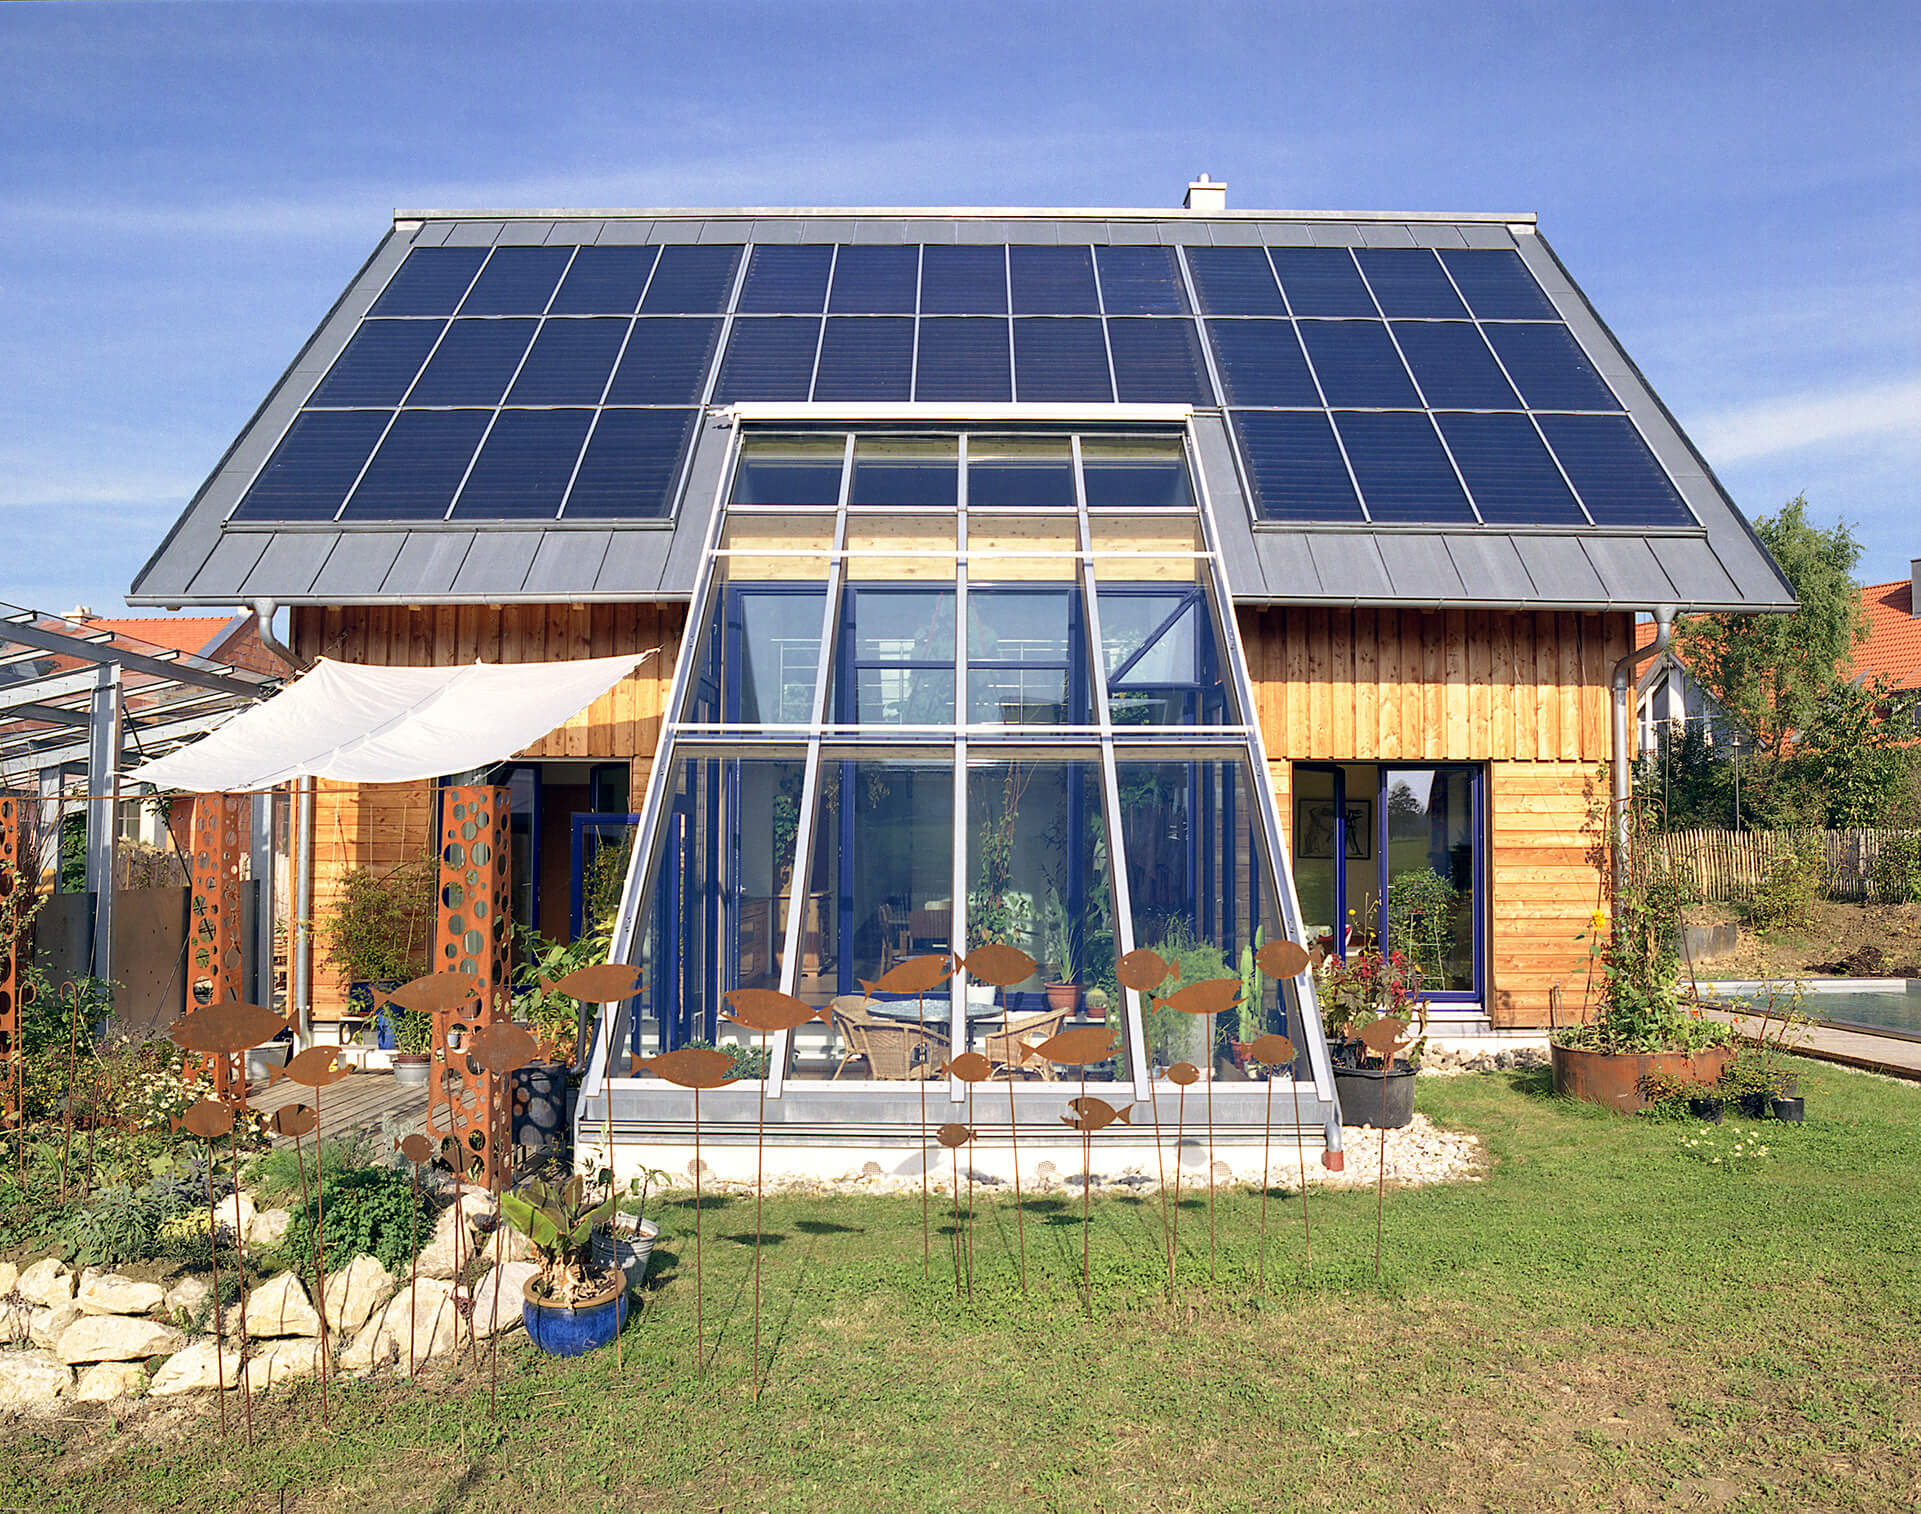 Solarthermie-Anlagen wie bei diesem SolarAktivHaus können mit künstlichen neuronalen Netzen effizient und kostengünstig geregelt werden.